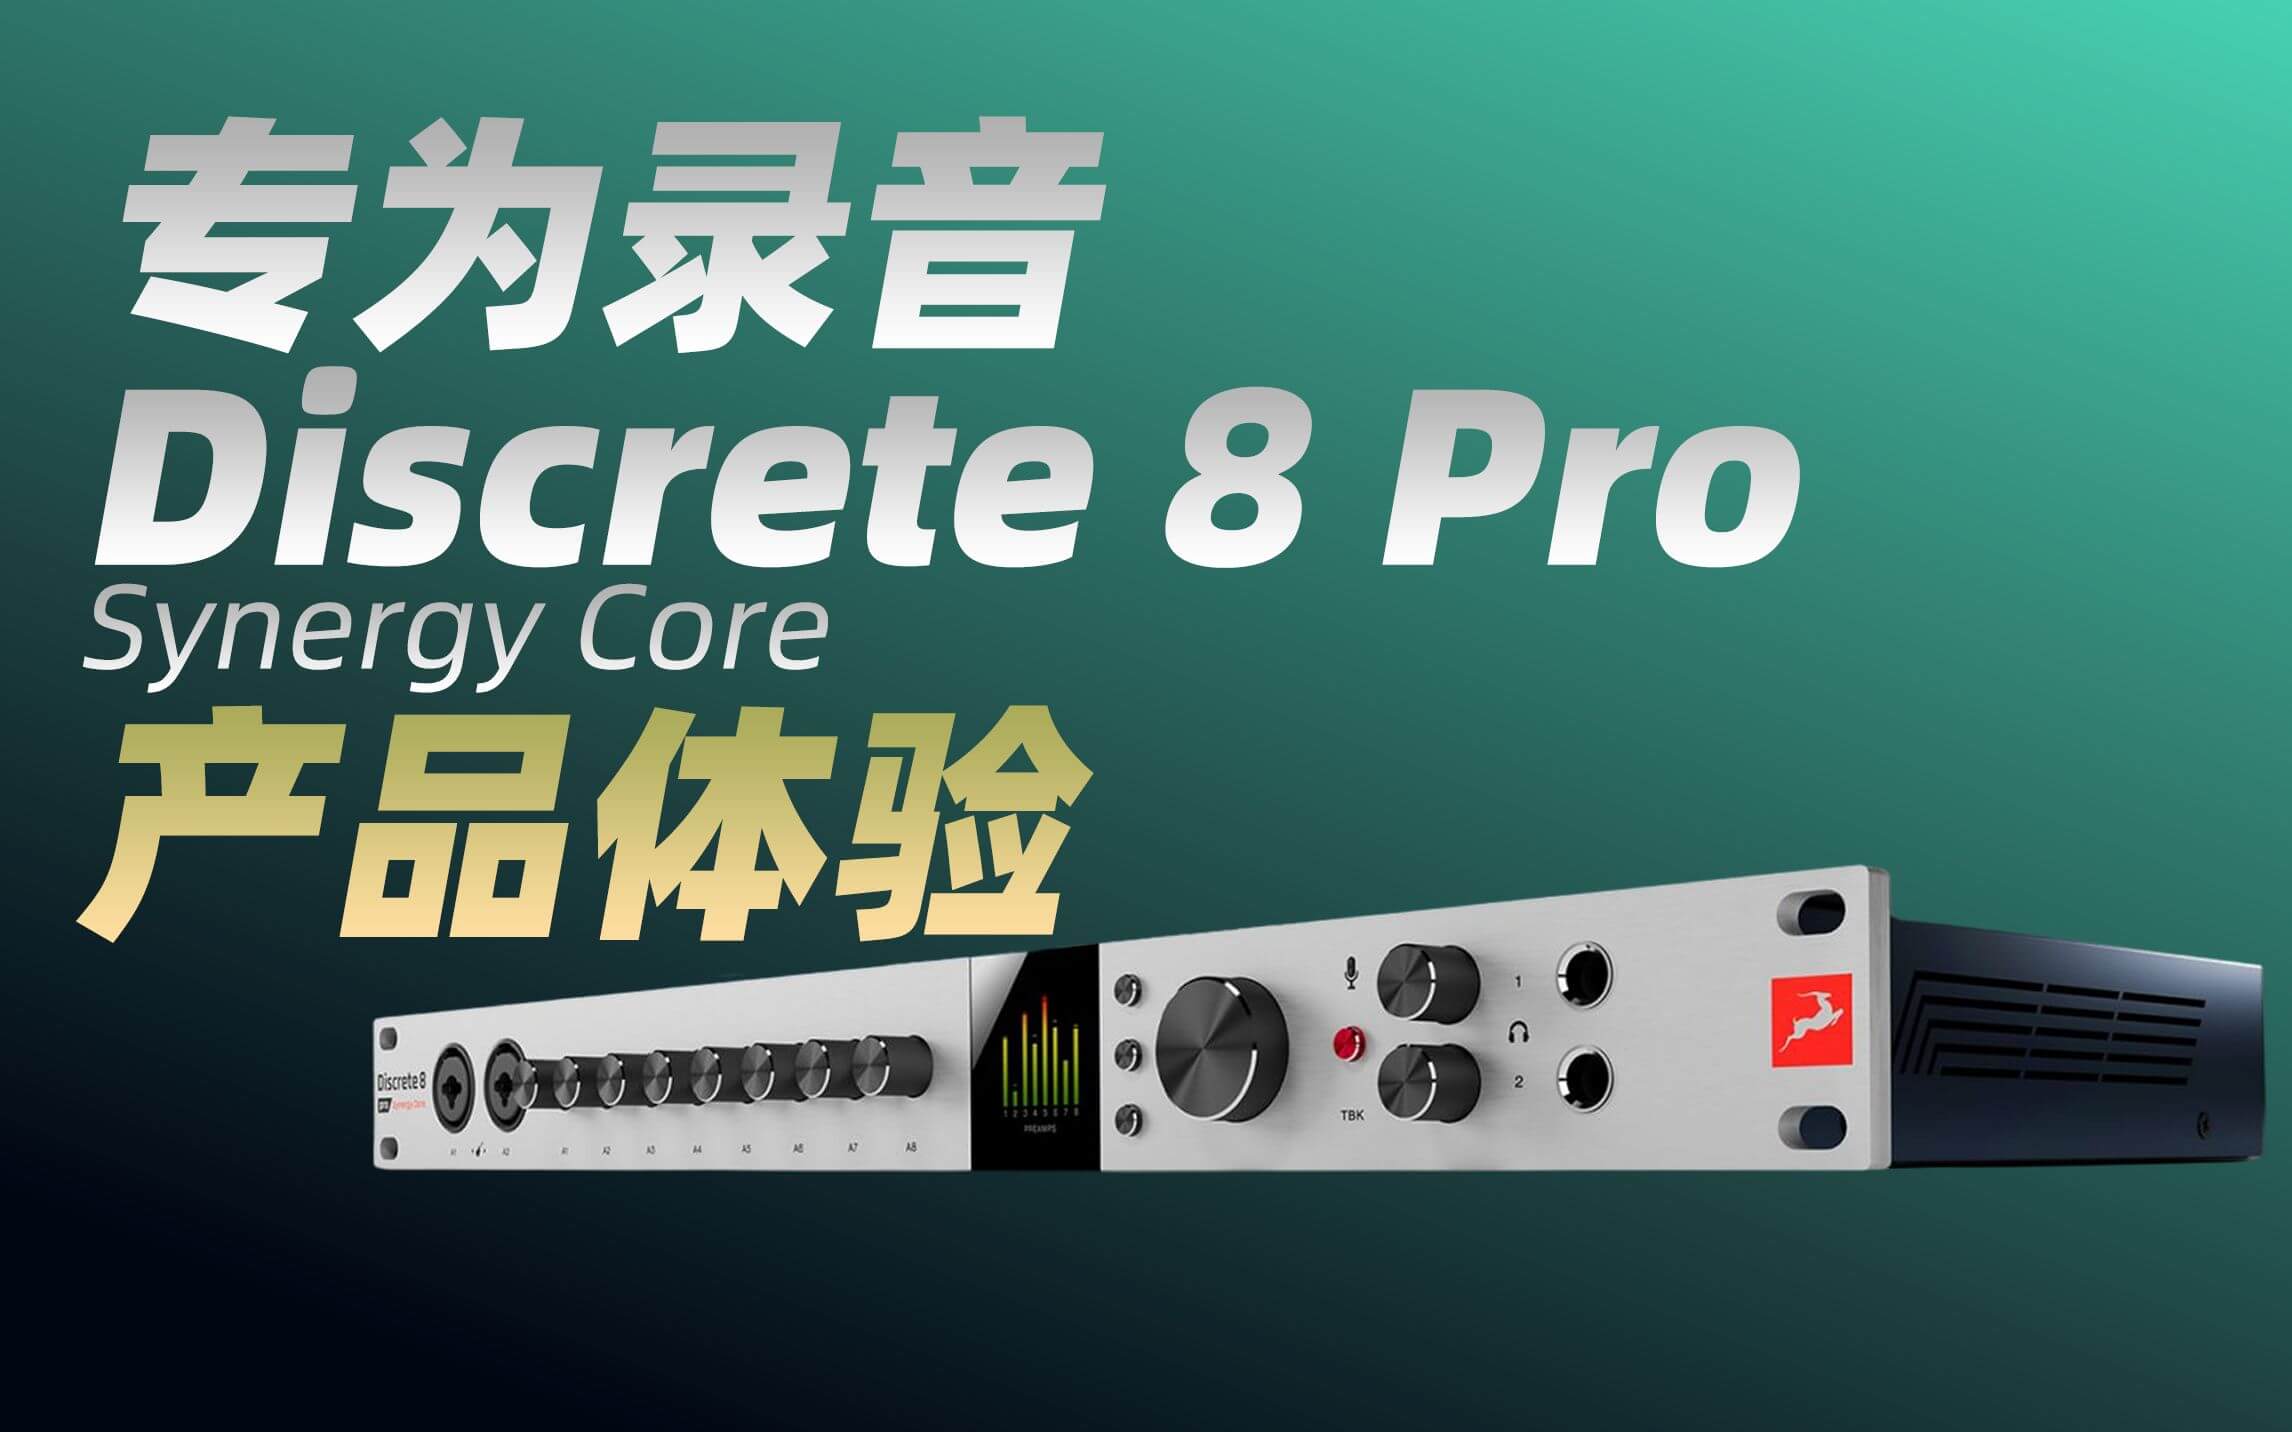 羚羊声卡Antelope Discrete 8 Pro SC音频接口 产品体验